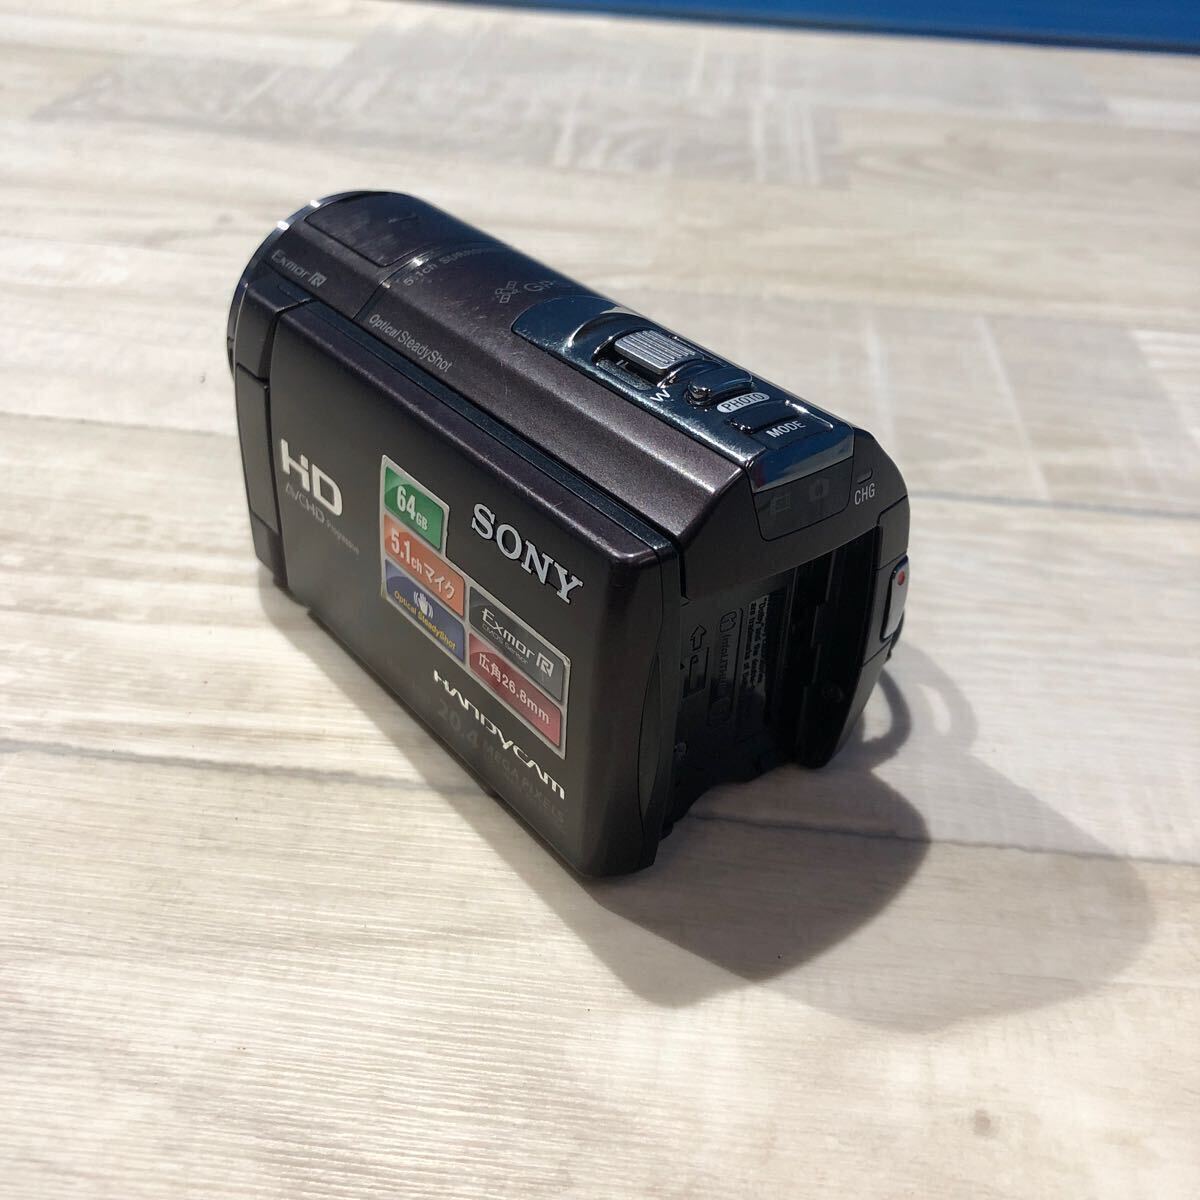 SONY ソニー HDR-CX590V HANDYCAM HD 64GB 広角26.8mm コンパクト ビデオカメラ ジャンク品 の画像4